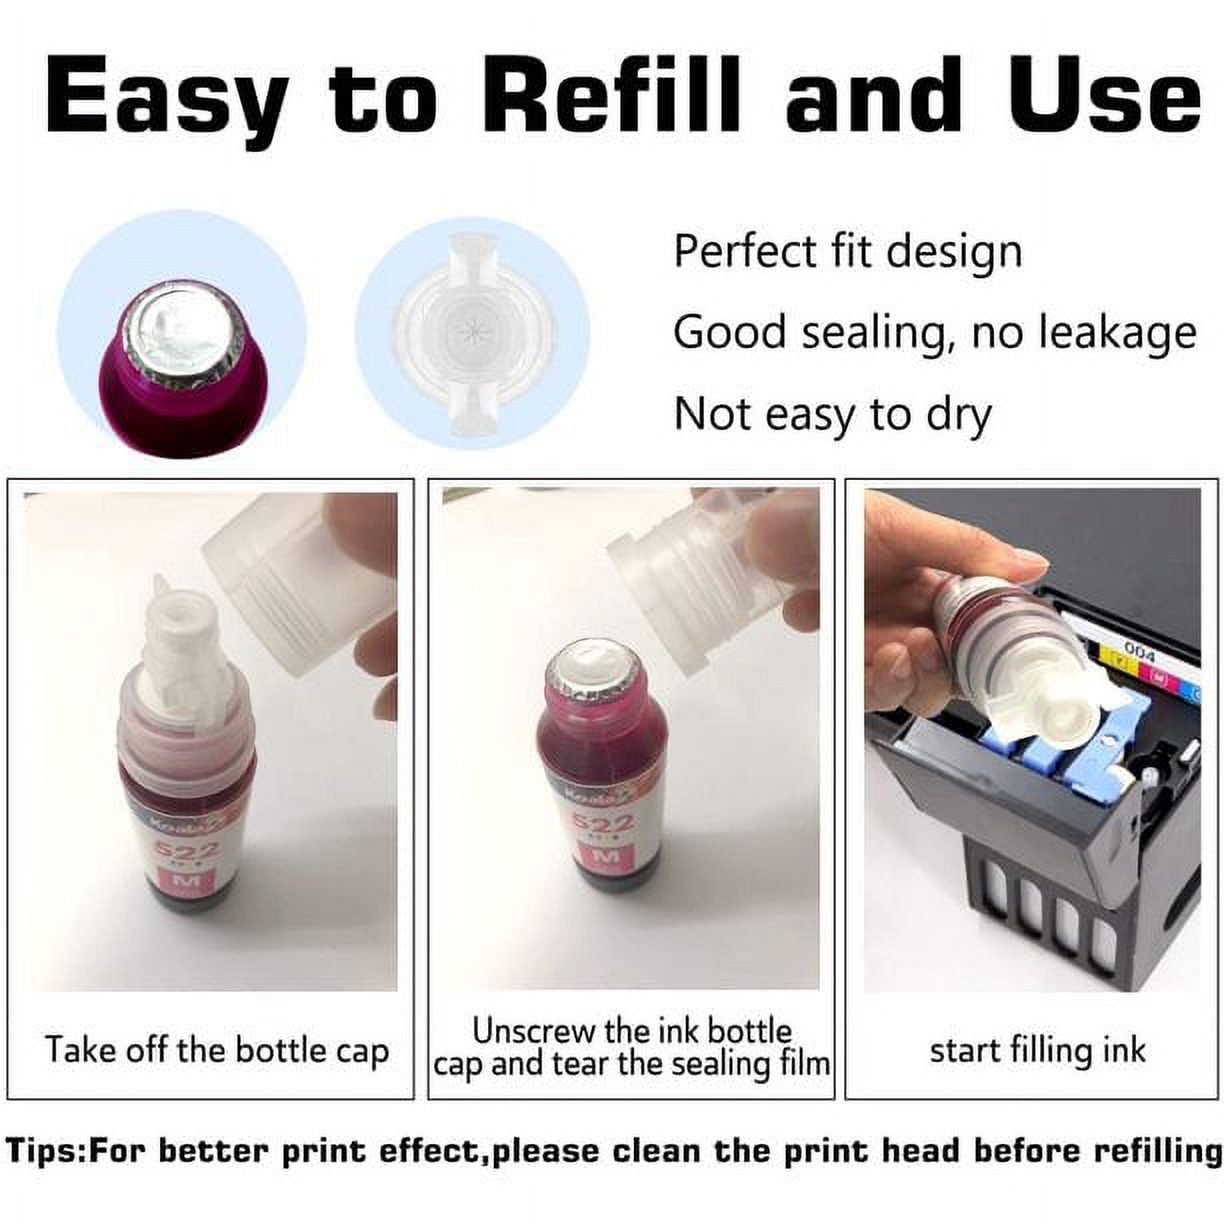 4 bottle Genuine refill ink for Epson 522 ET-2720 ET-4700 – INKRAZ